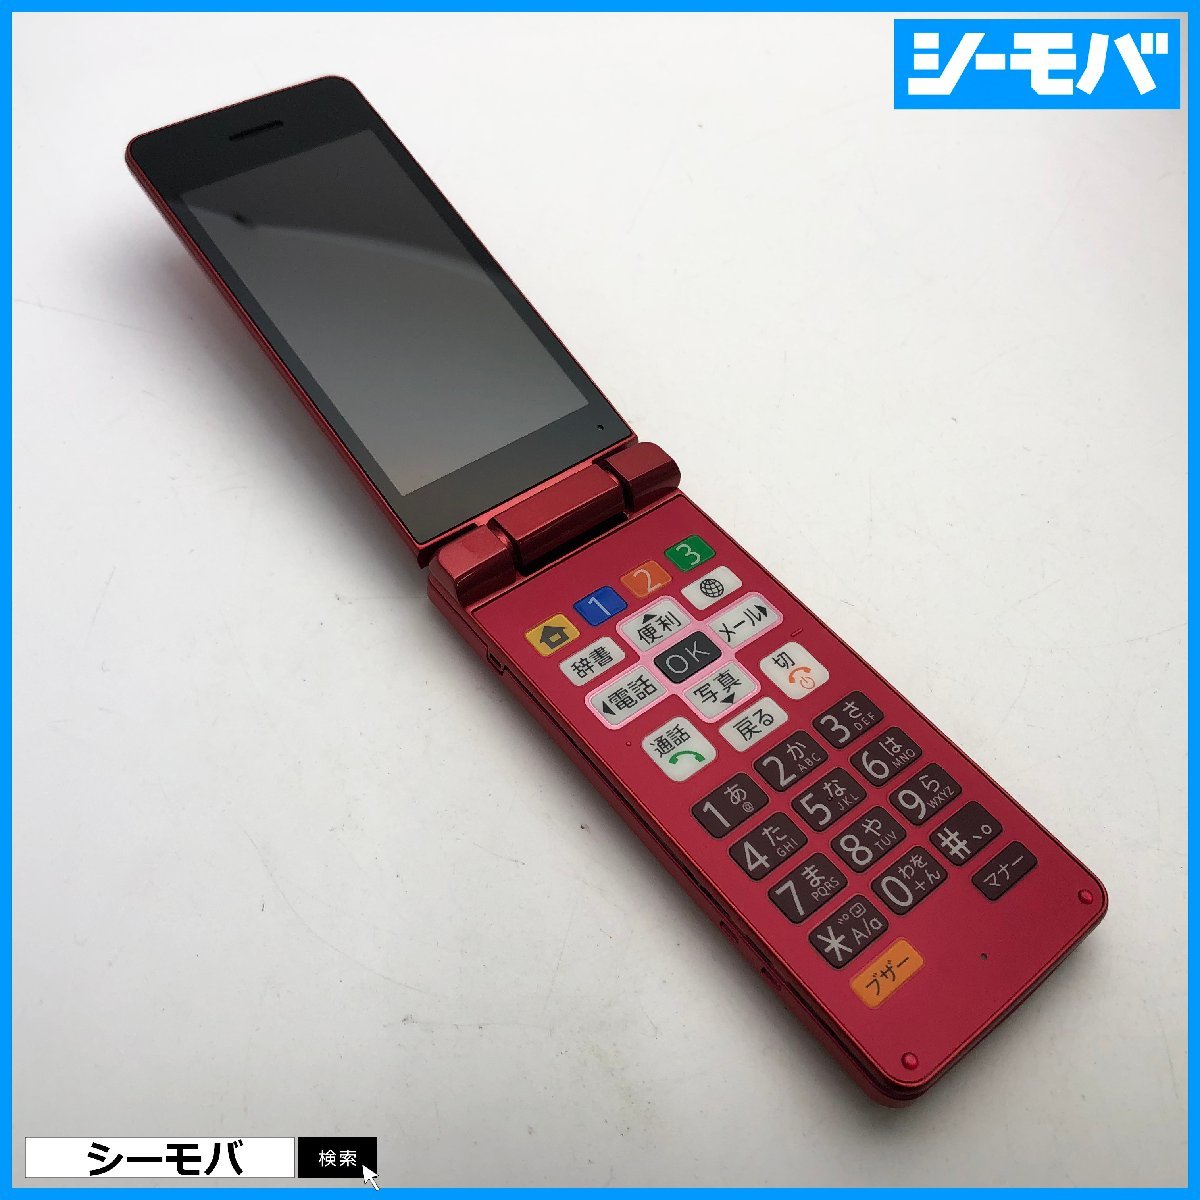 ガラケー かんたん携帯10 807SH softbank レッド 超美品 ソフトバンク バージョン8.1.0 RUUN12452